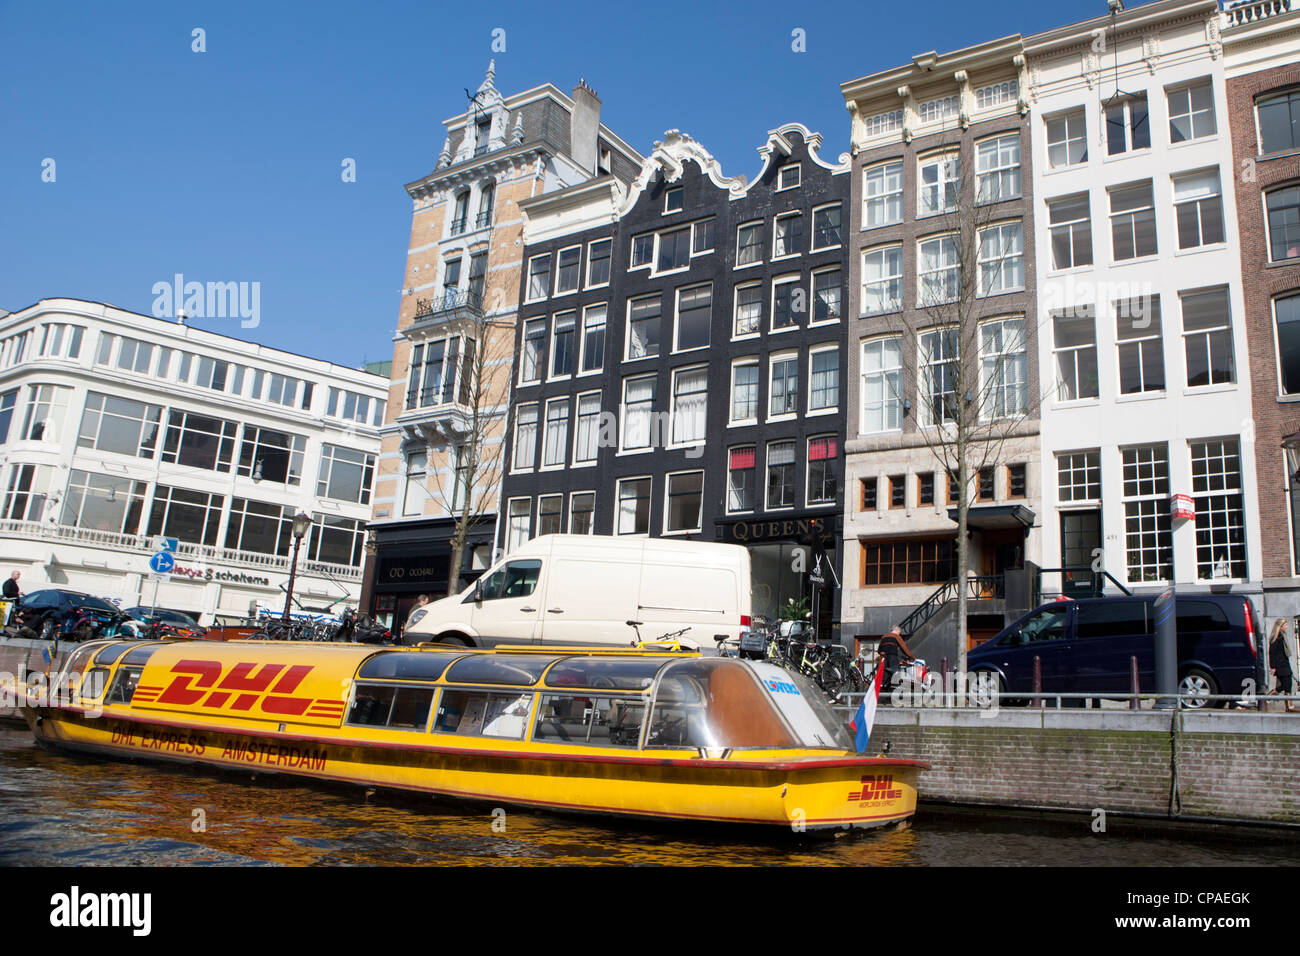 DHL Express bateau dans un canal à Amsterdam Banque D'Images